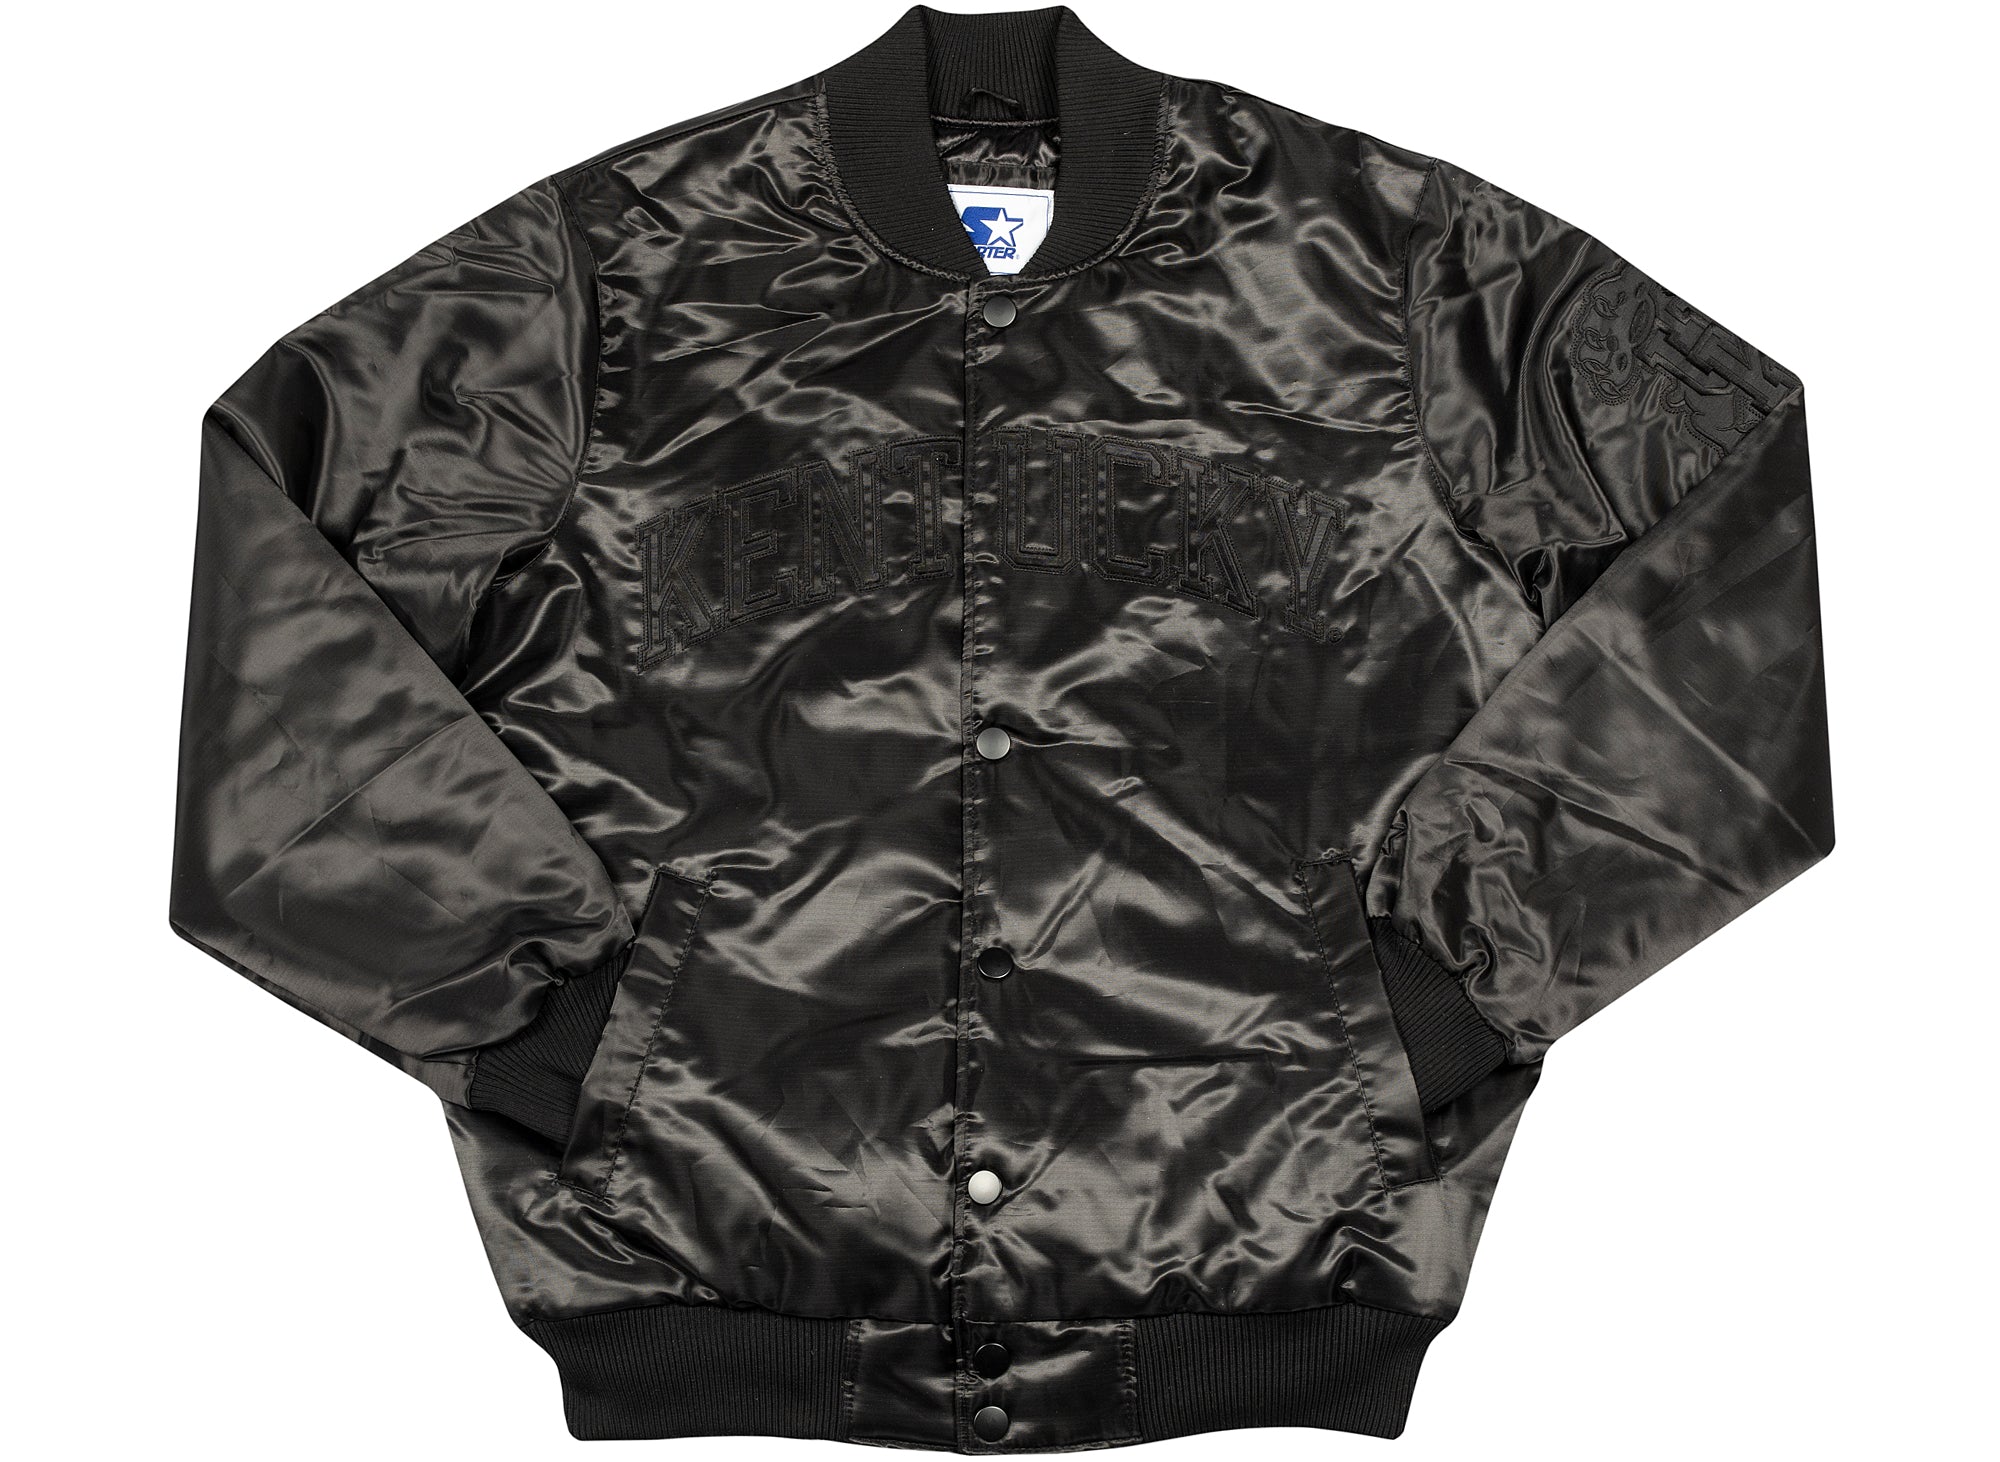 university of louisville leather jacket